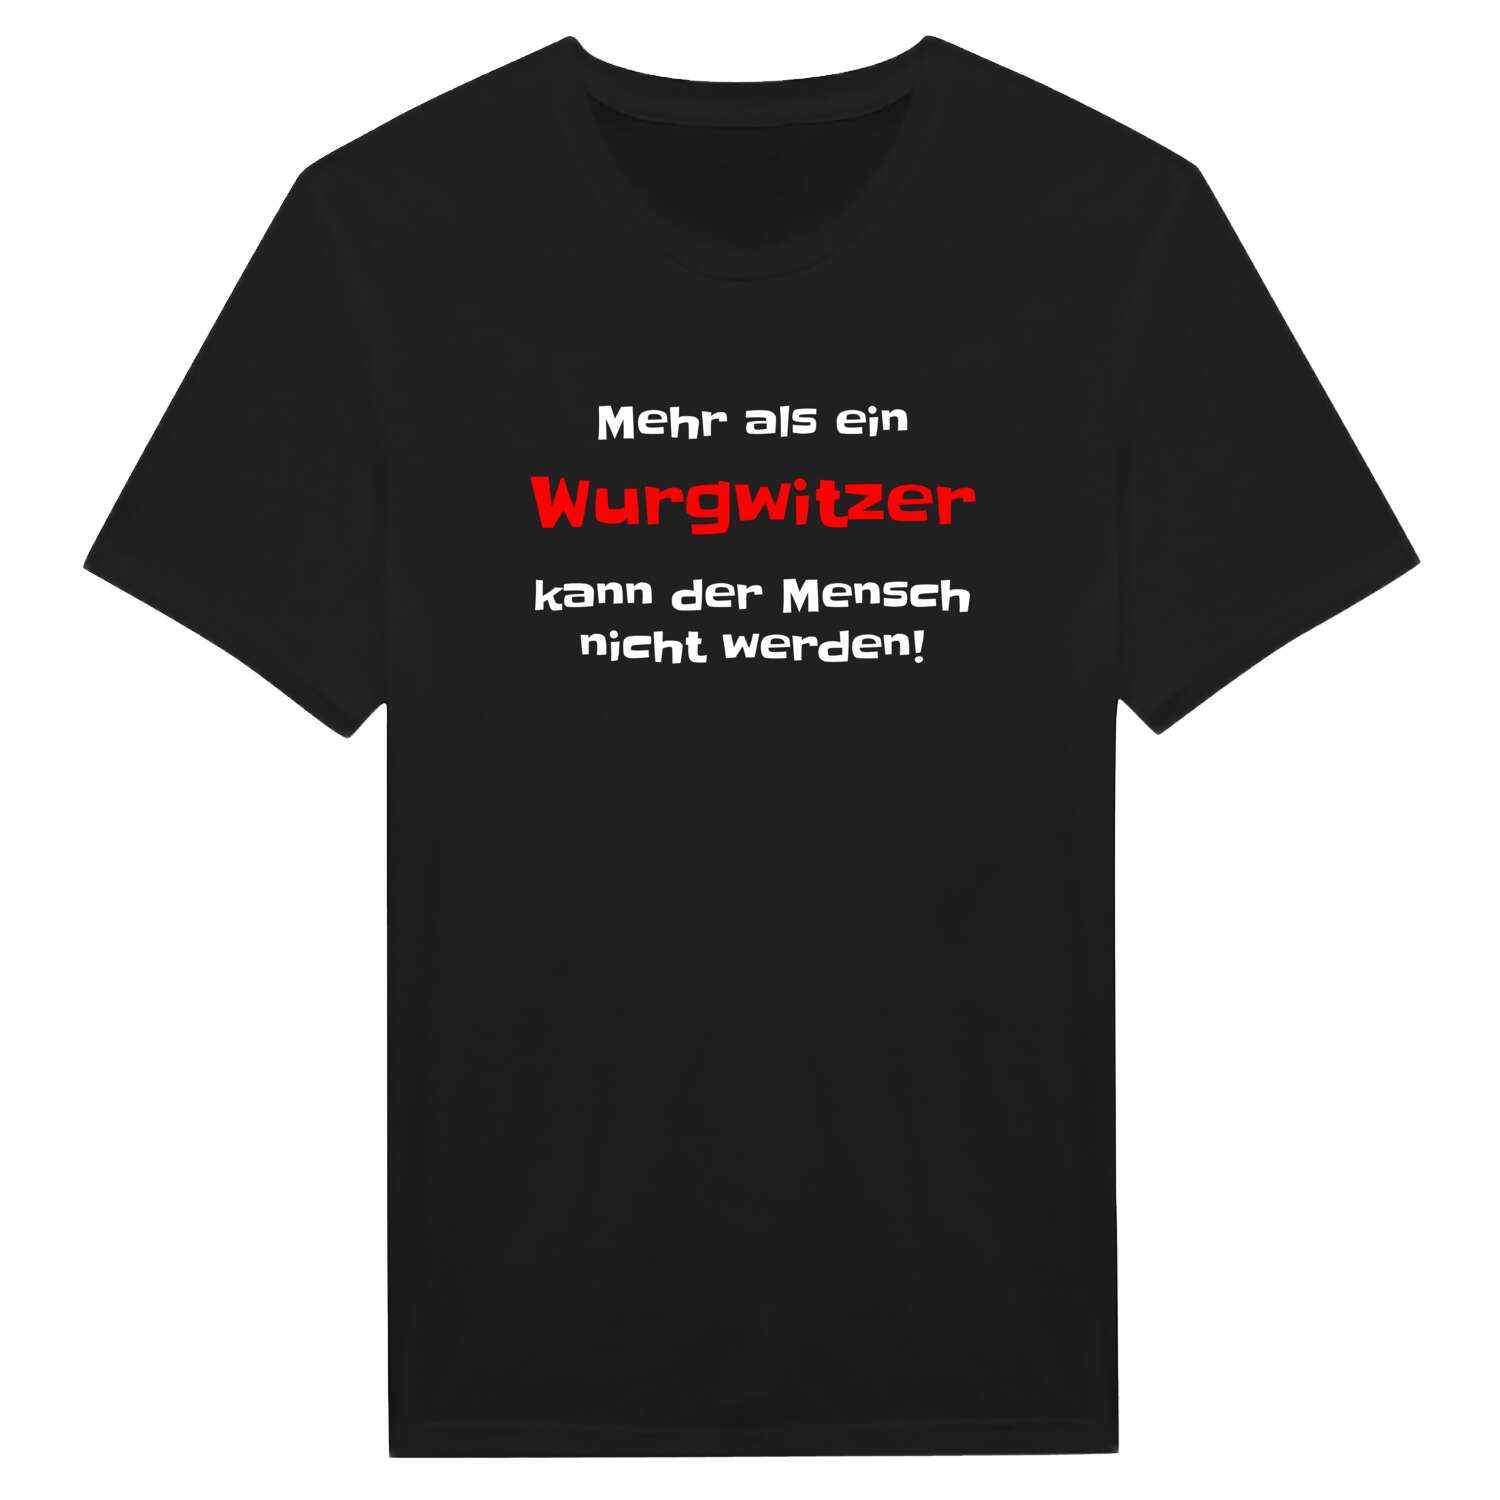 Wurgwitz T-Shirt »Mehr als ein«